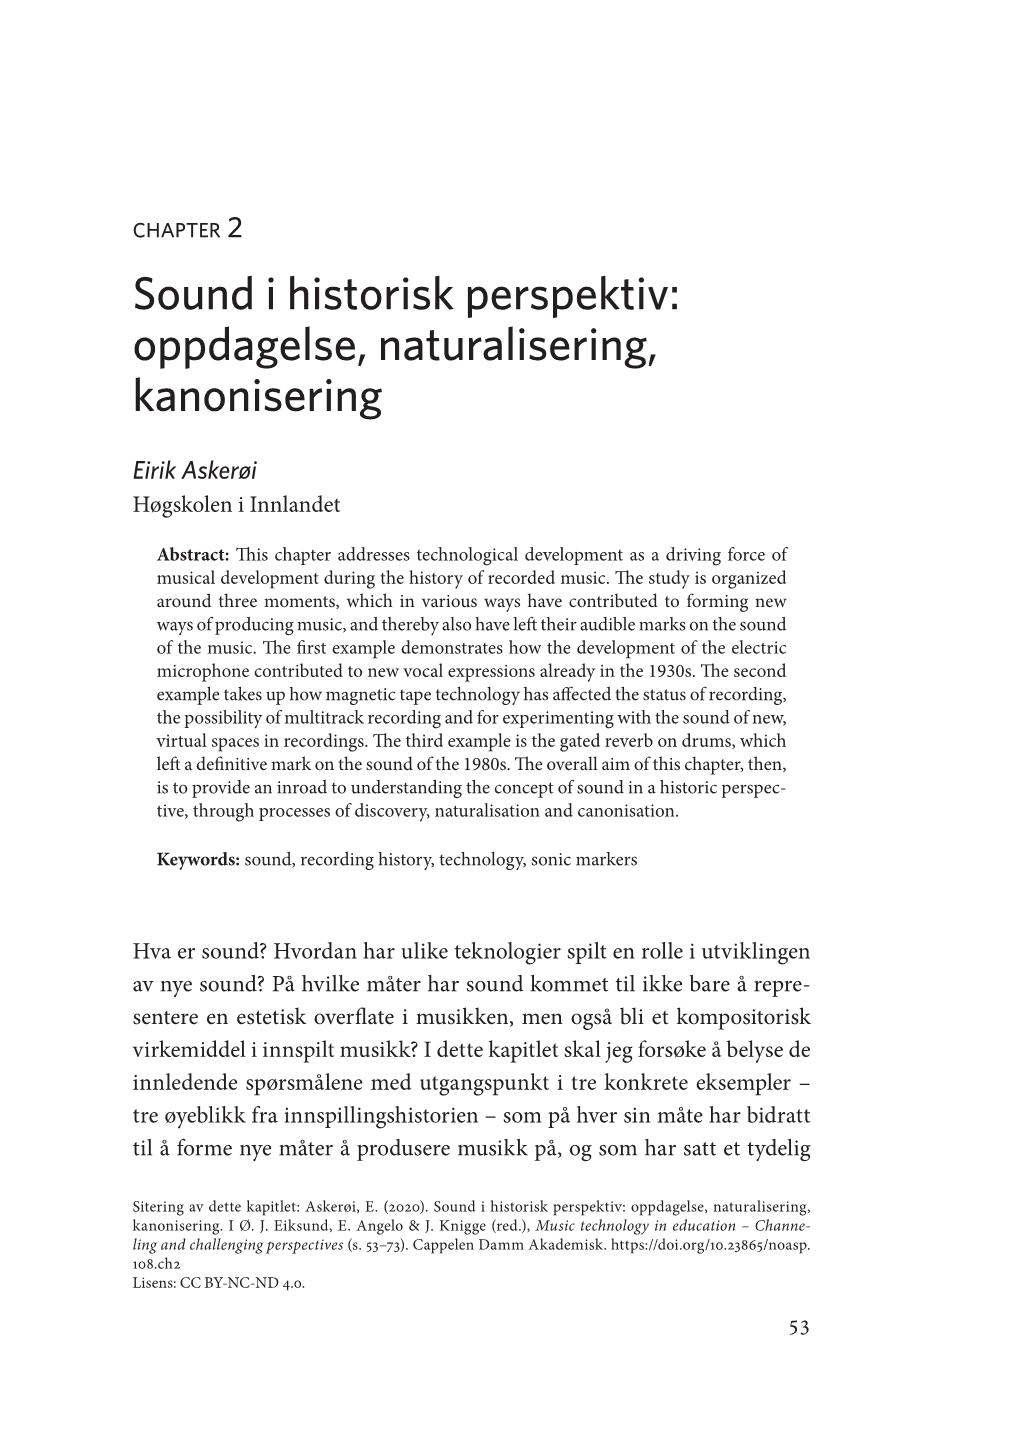 Sound I Historisk Perspektiv: Oppdagelse, Naturalisering, Kanonisering